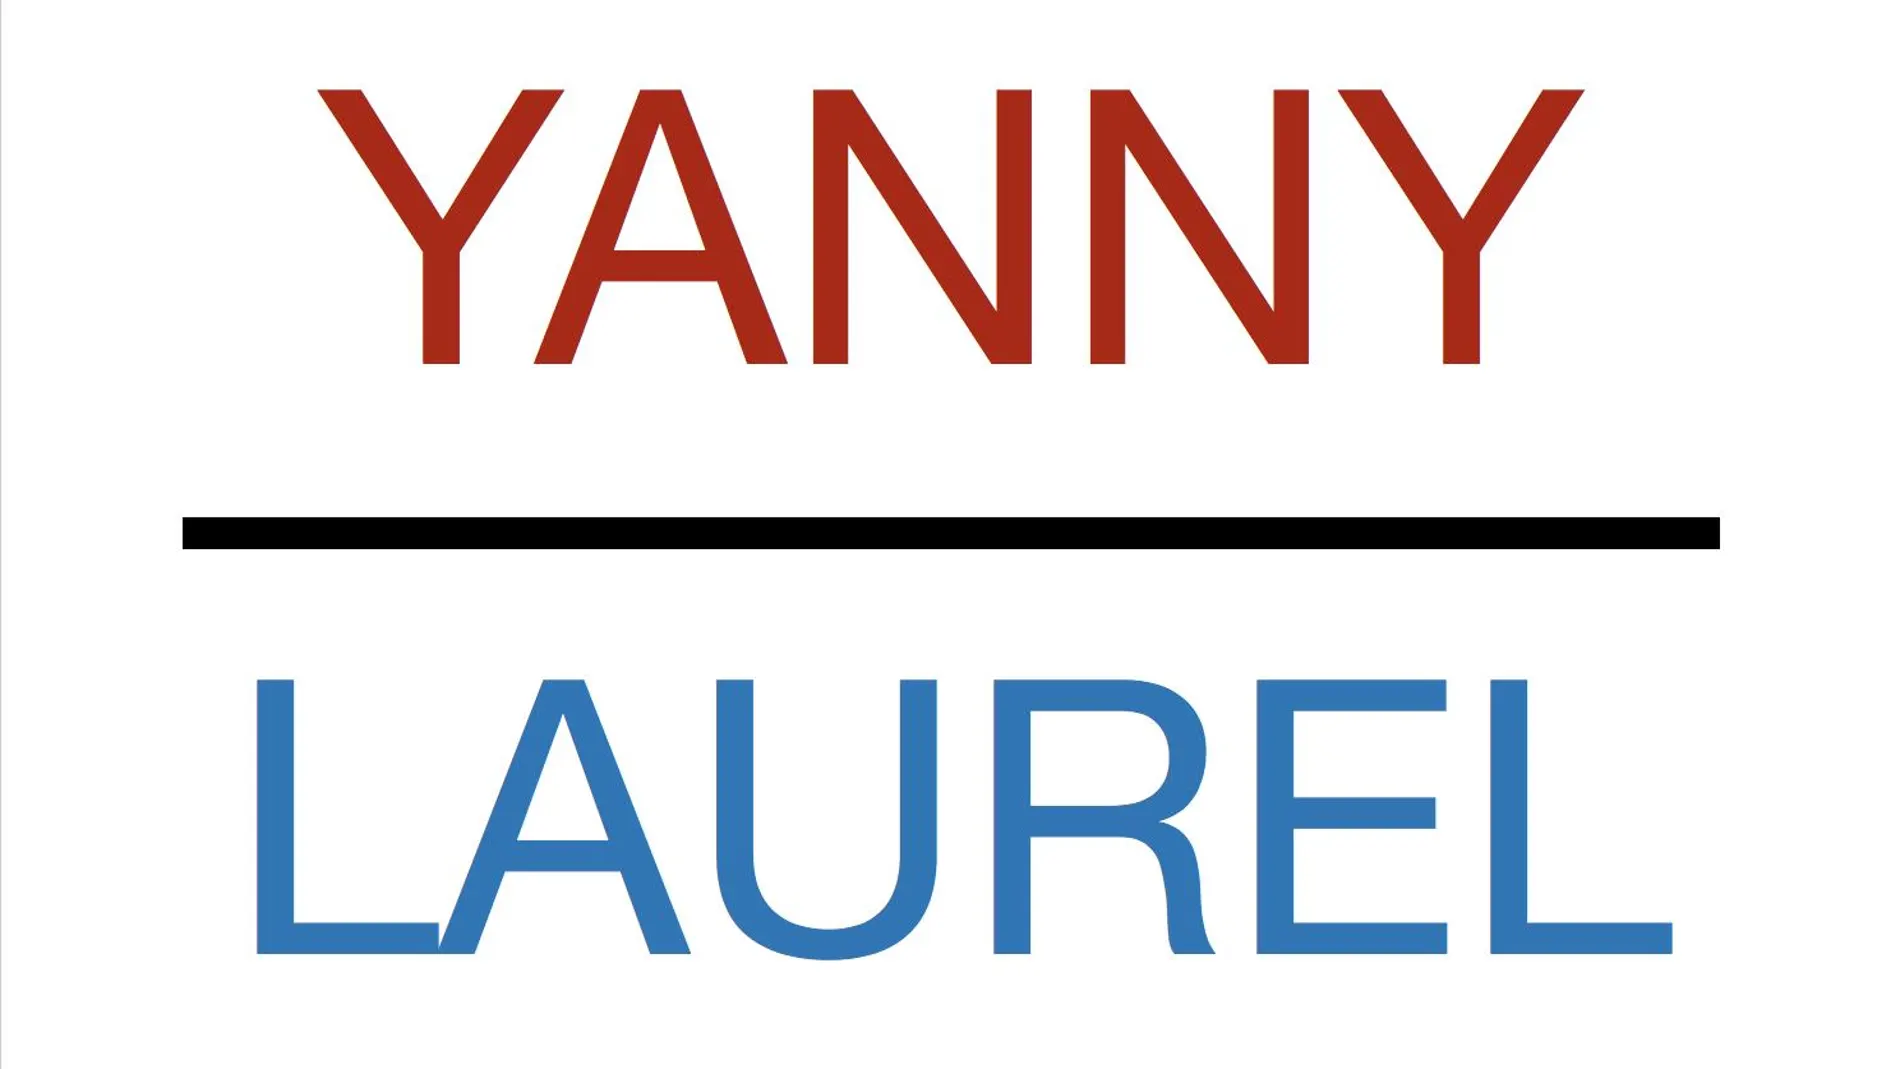 ¿Qué dice la grabación: Yanny o Laurel?